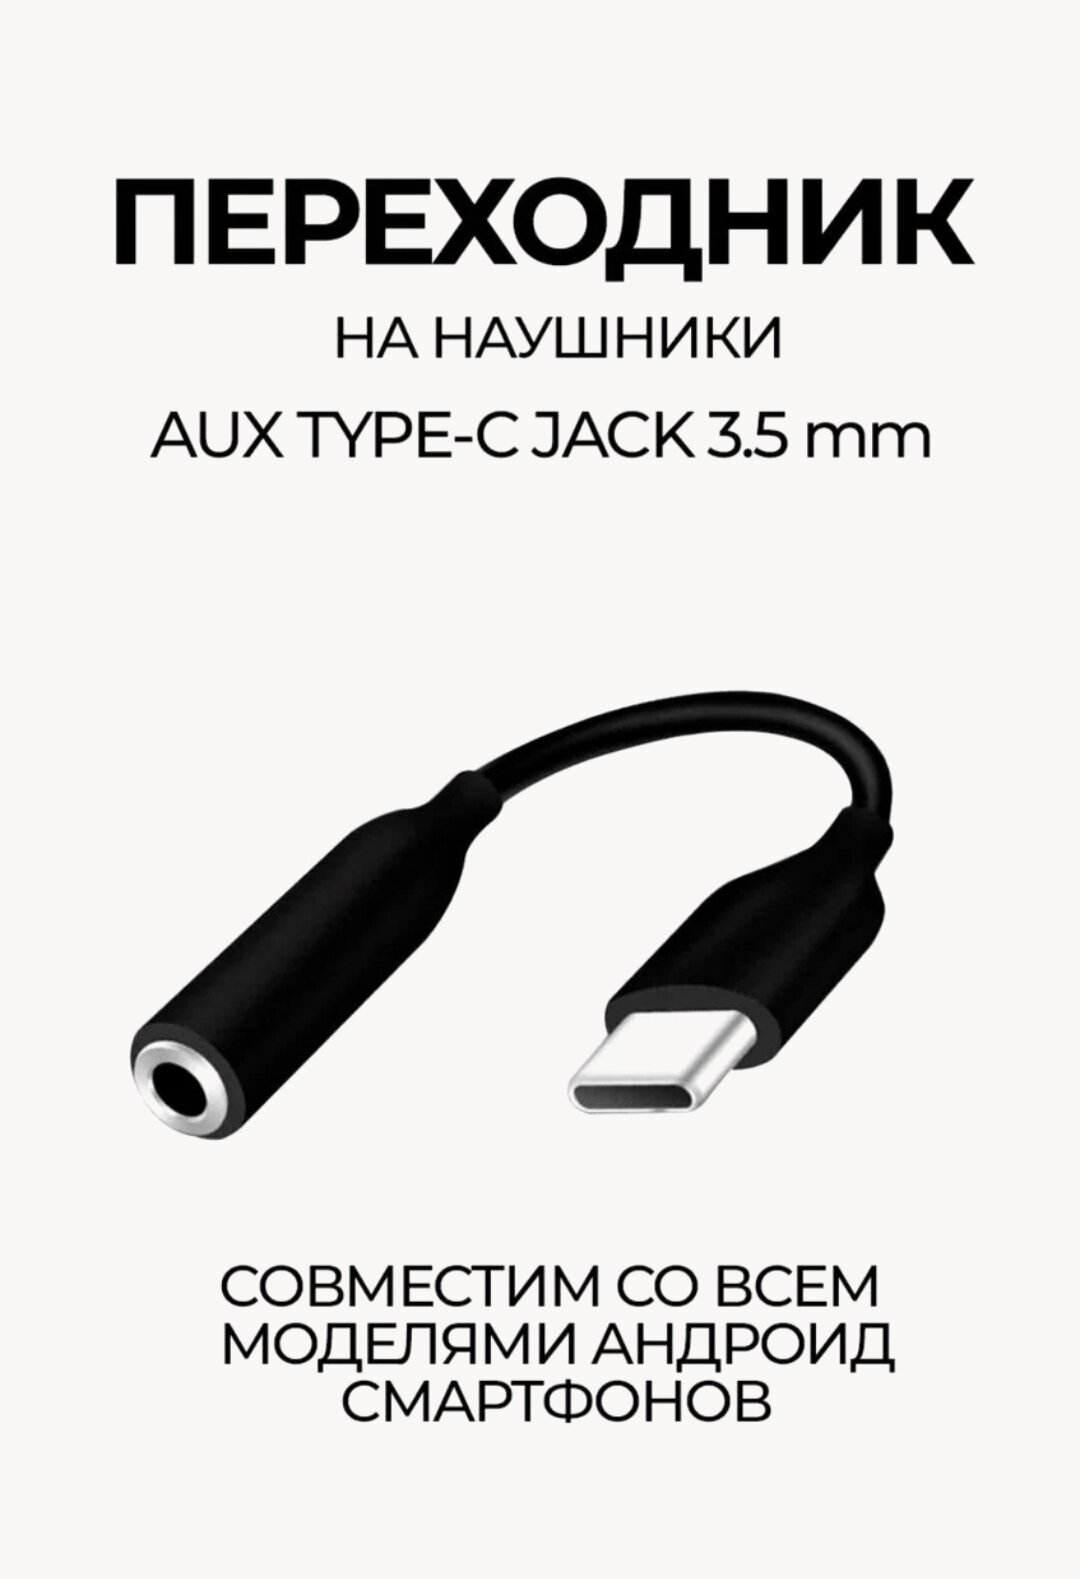 Type C - AUX Переходник для наушников C77886/Тайп Си для аудио/ Адаптер USB Type-C - AUX 3,5 мм